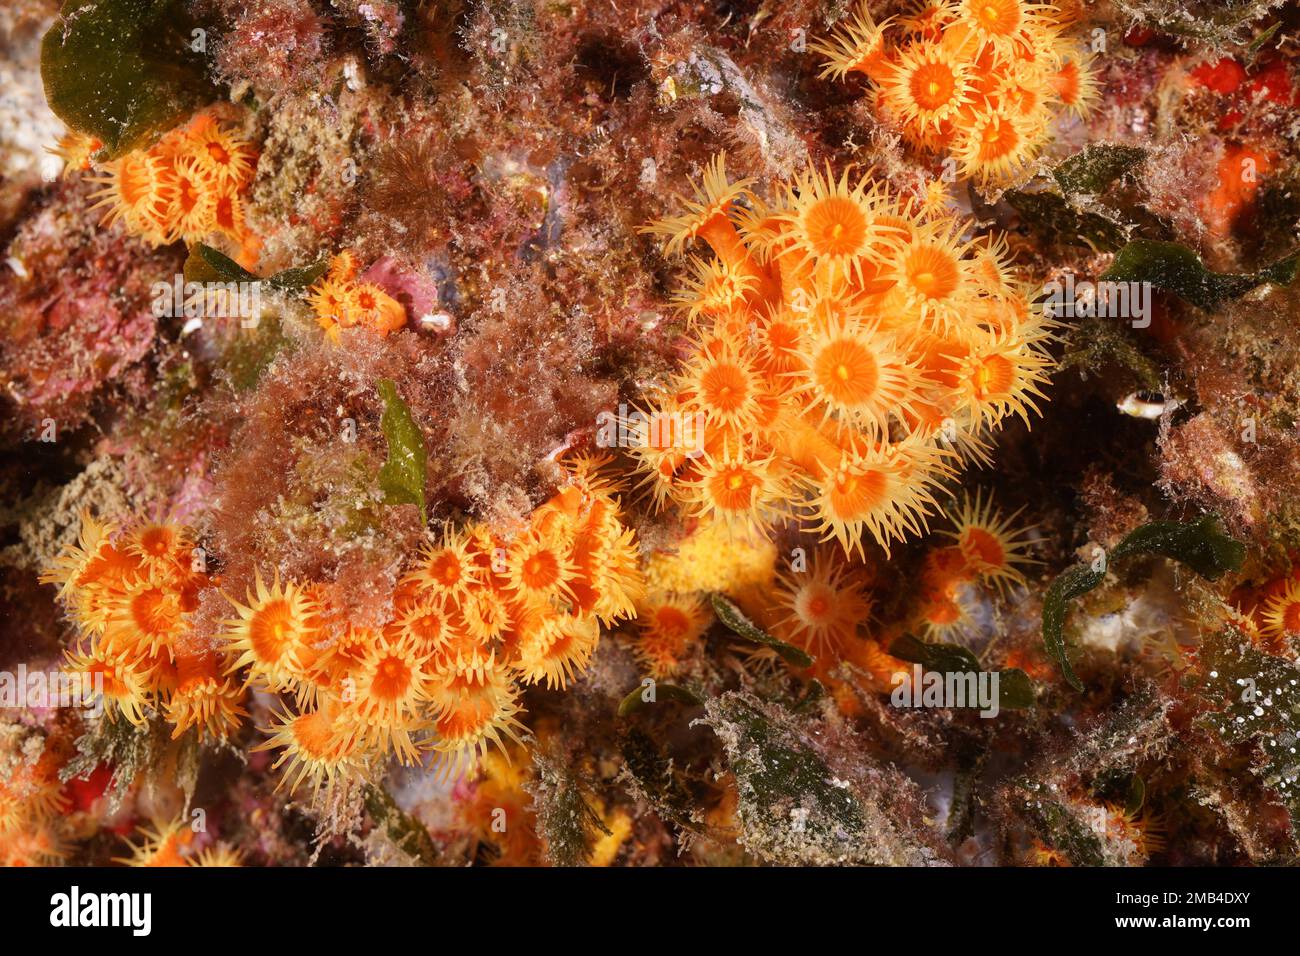 Yellow cluster anemone (Parazoanthus axinellae) . Dive site Marine Reserve Cap de Creus, Rosas, Costa Brava, Spain, Mediterranean Sea Stock Photo